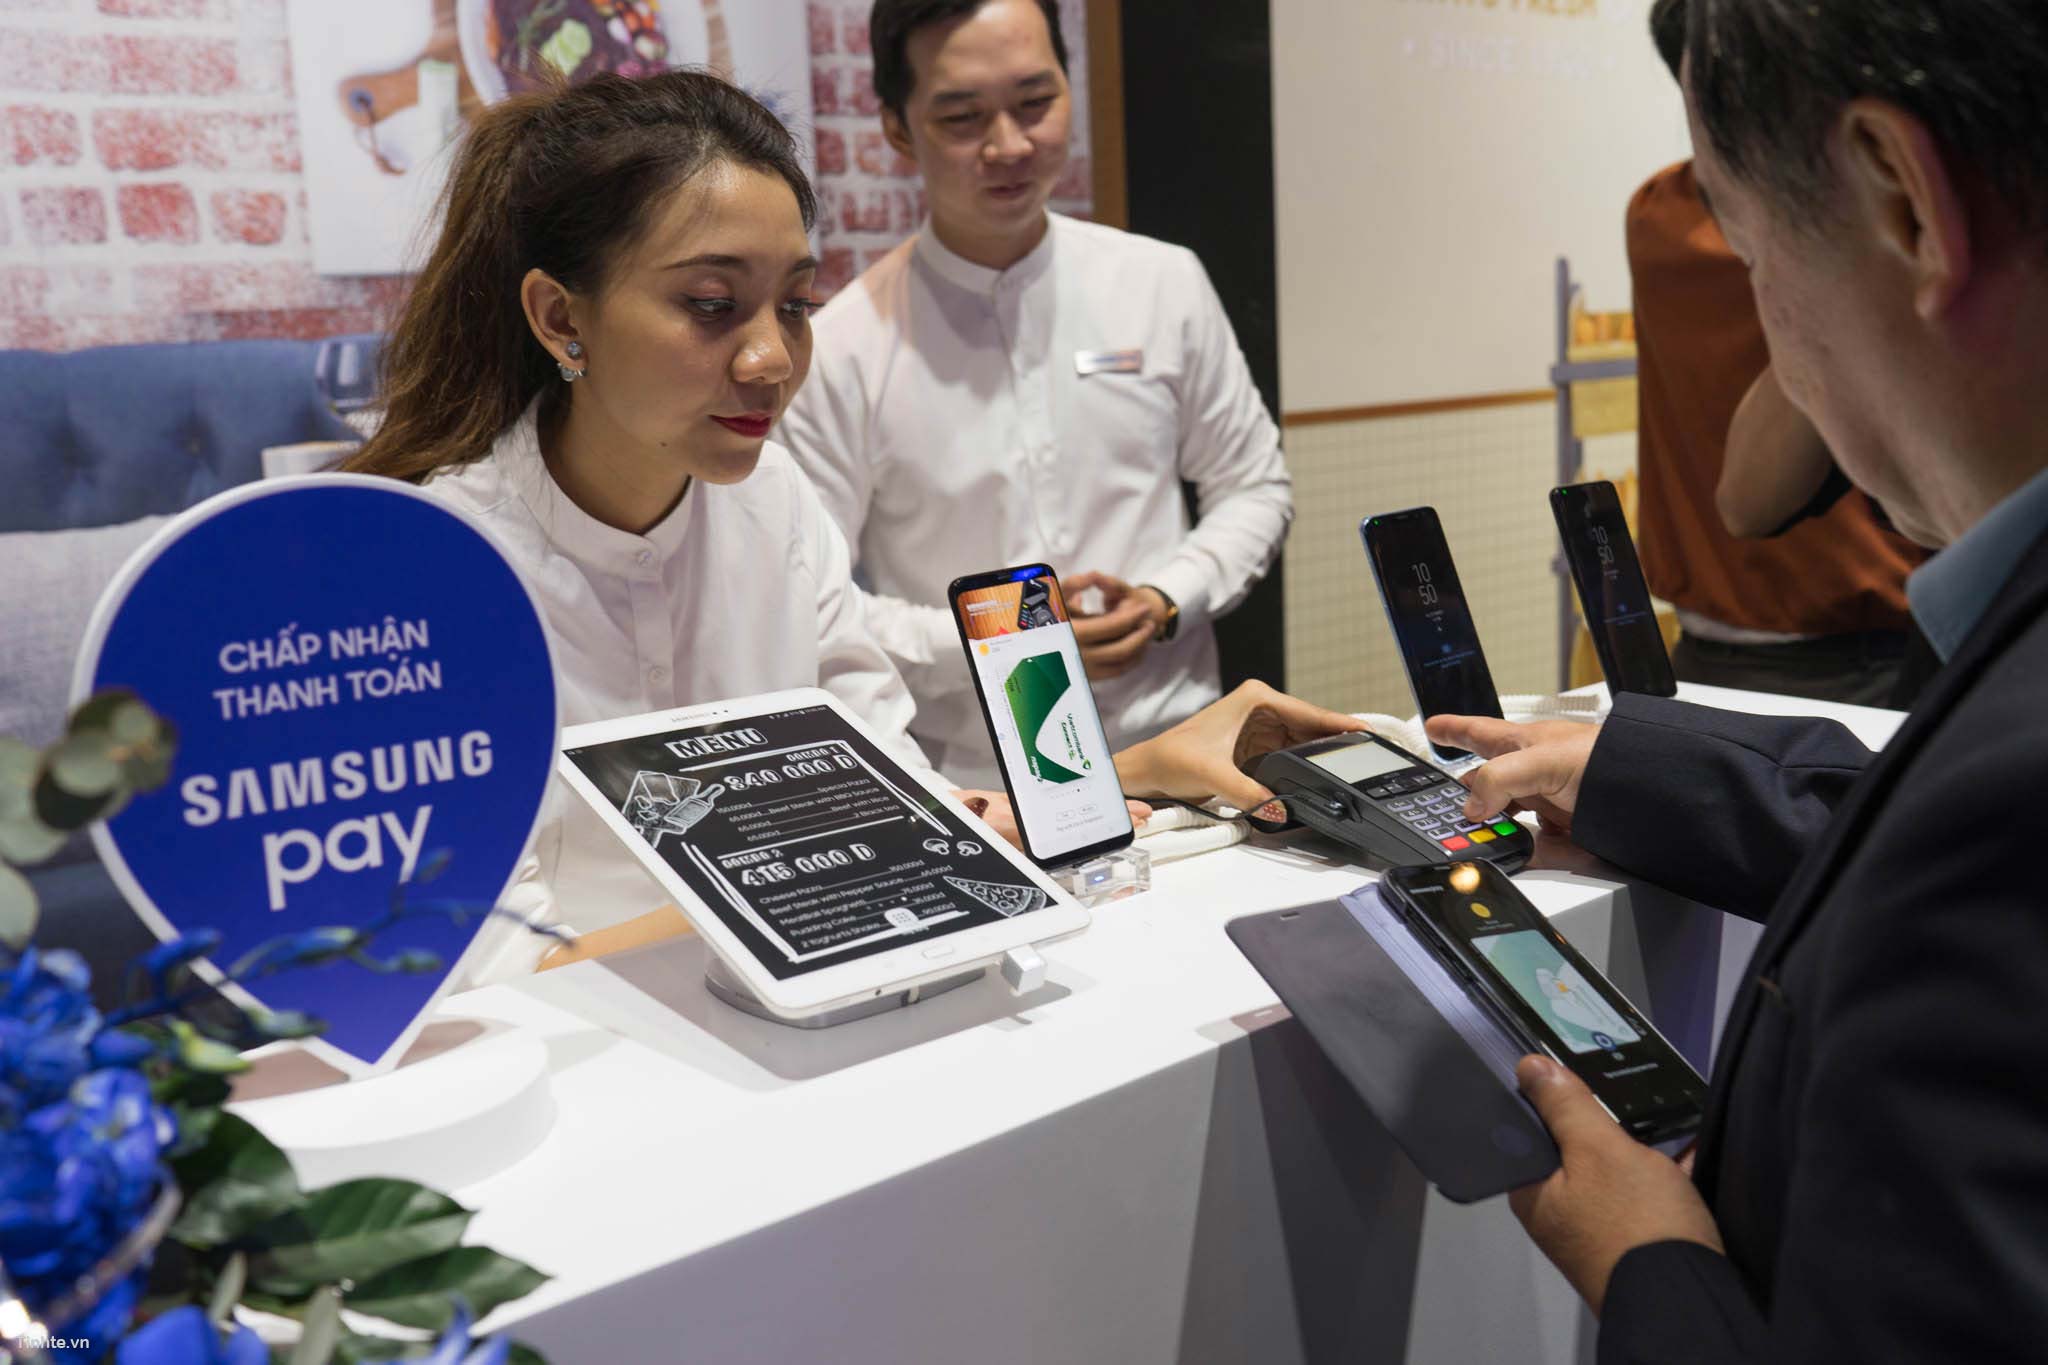 Samsung hợp tác với NAPAS giới thiệu giải pháp thanh toán di động Samsung Pay